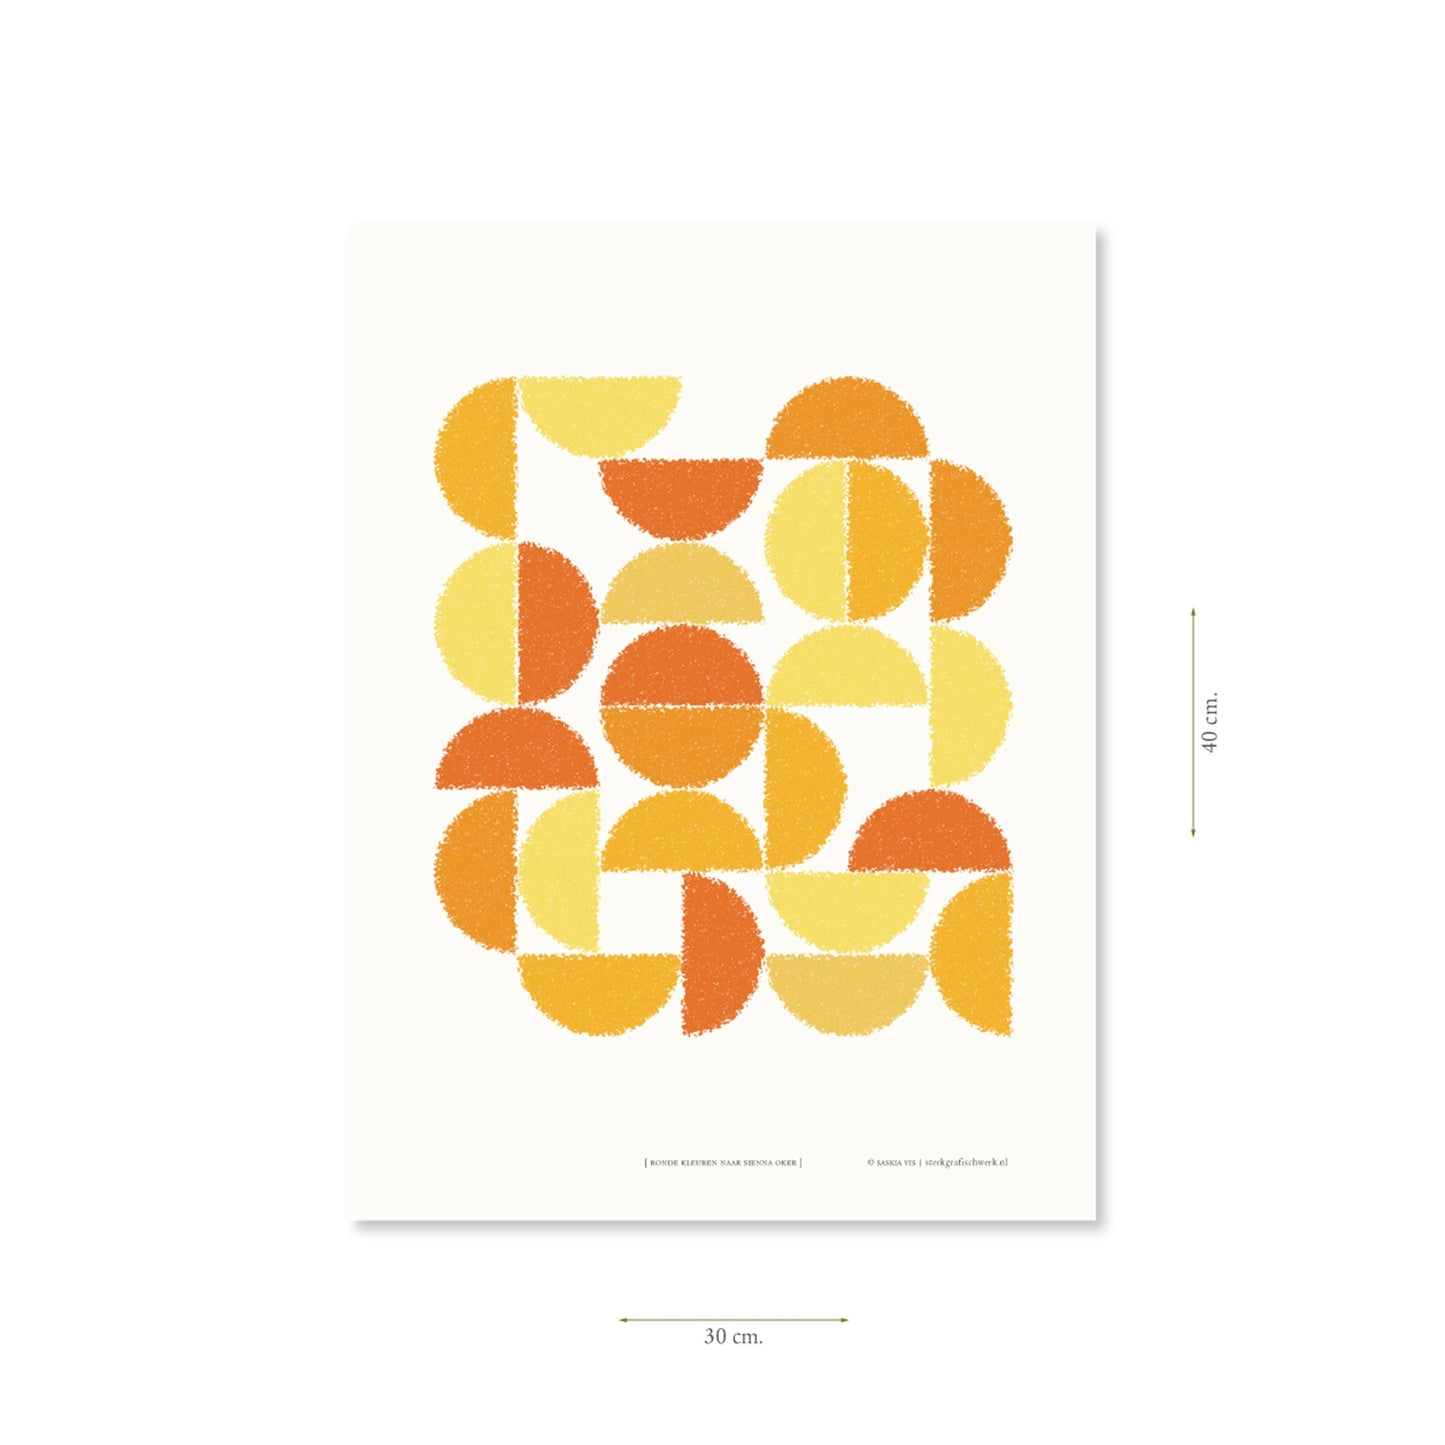 Productafbeelding poster "ronde kleuren naar sienna oker" met aanduiding van het formaat erop weergegeven 30 x 40 cm